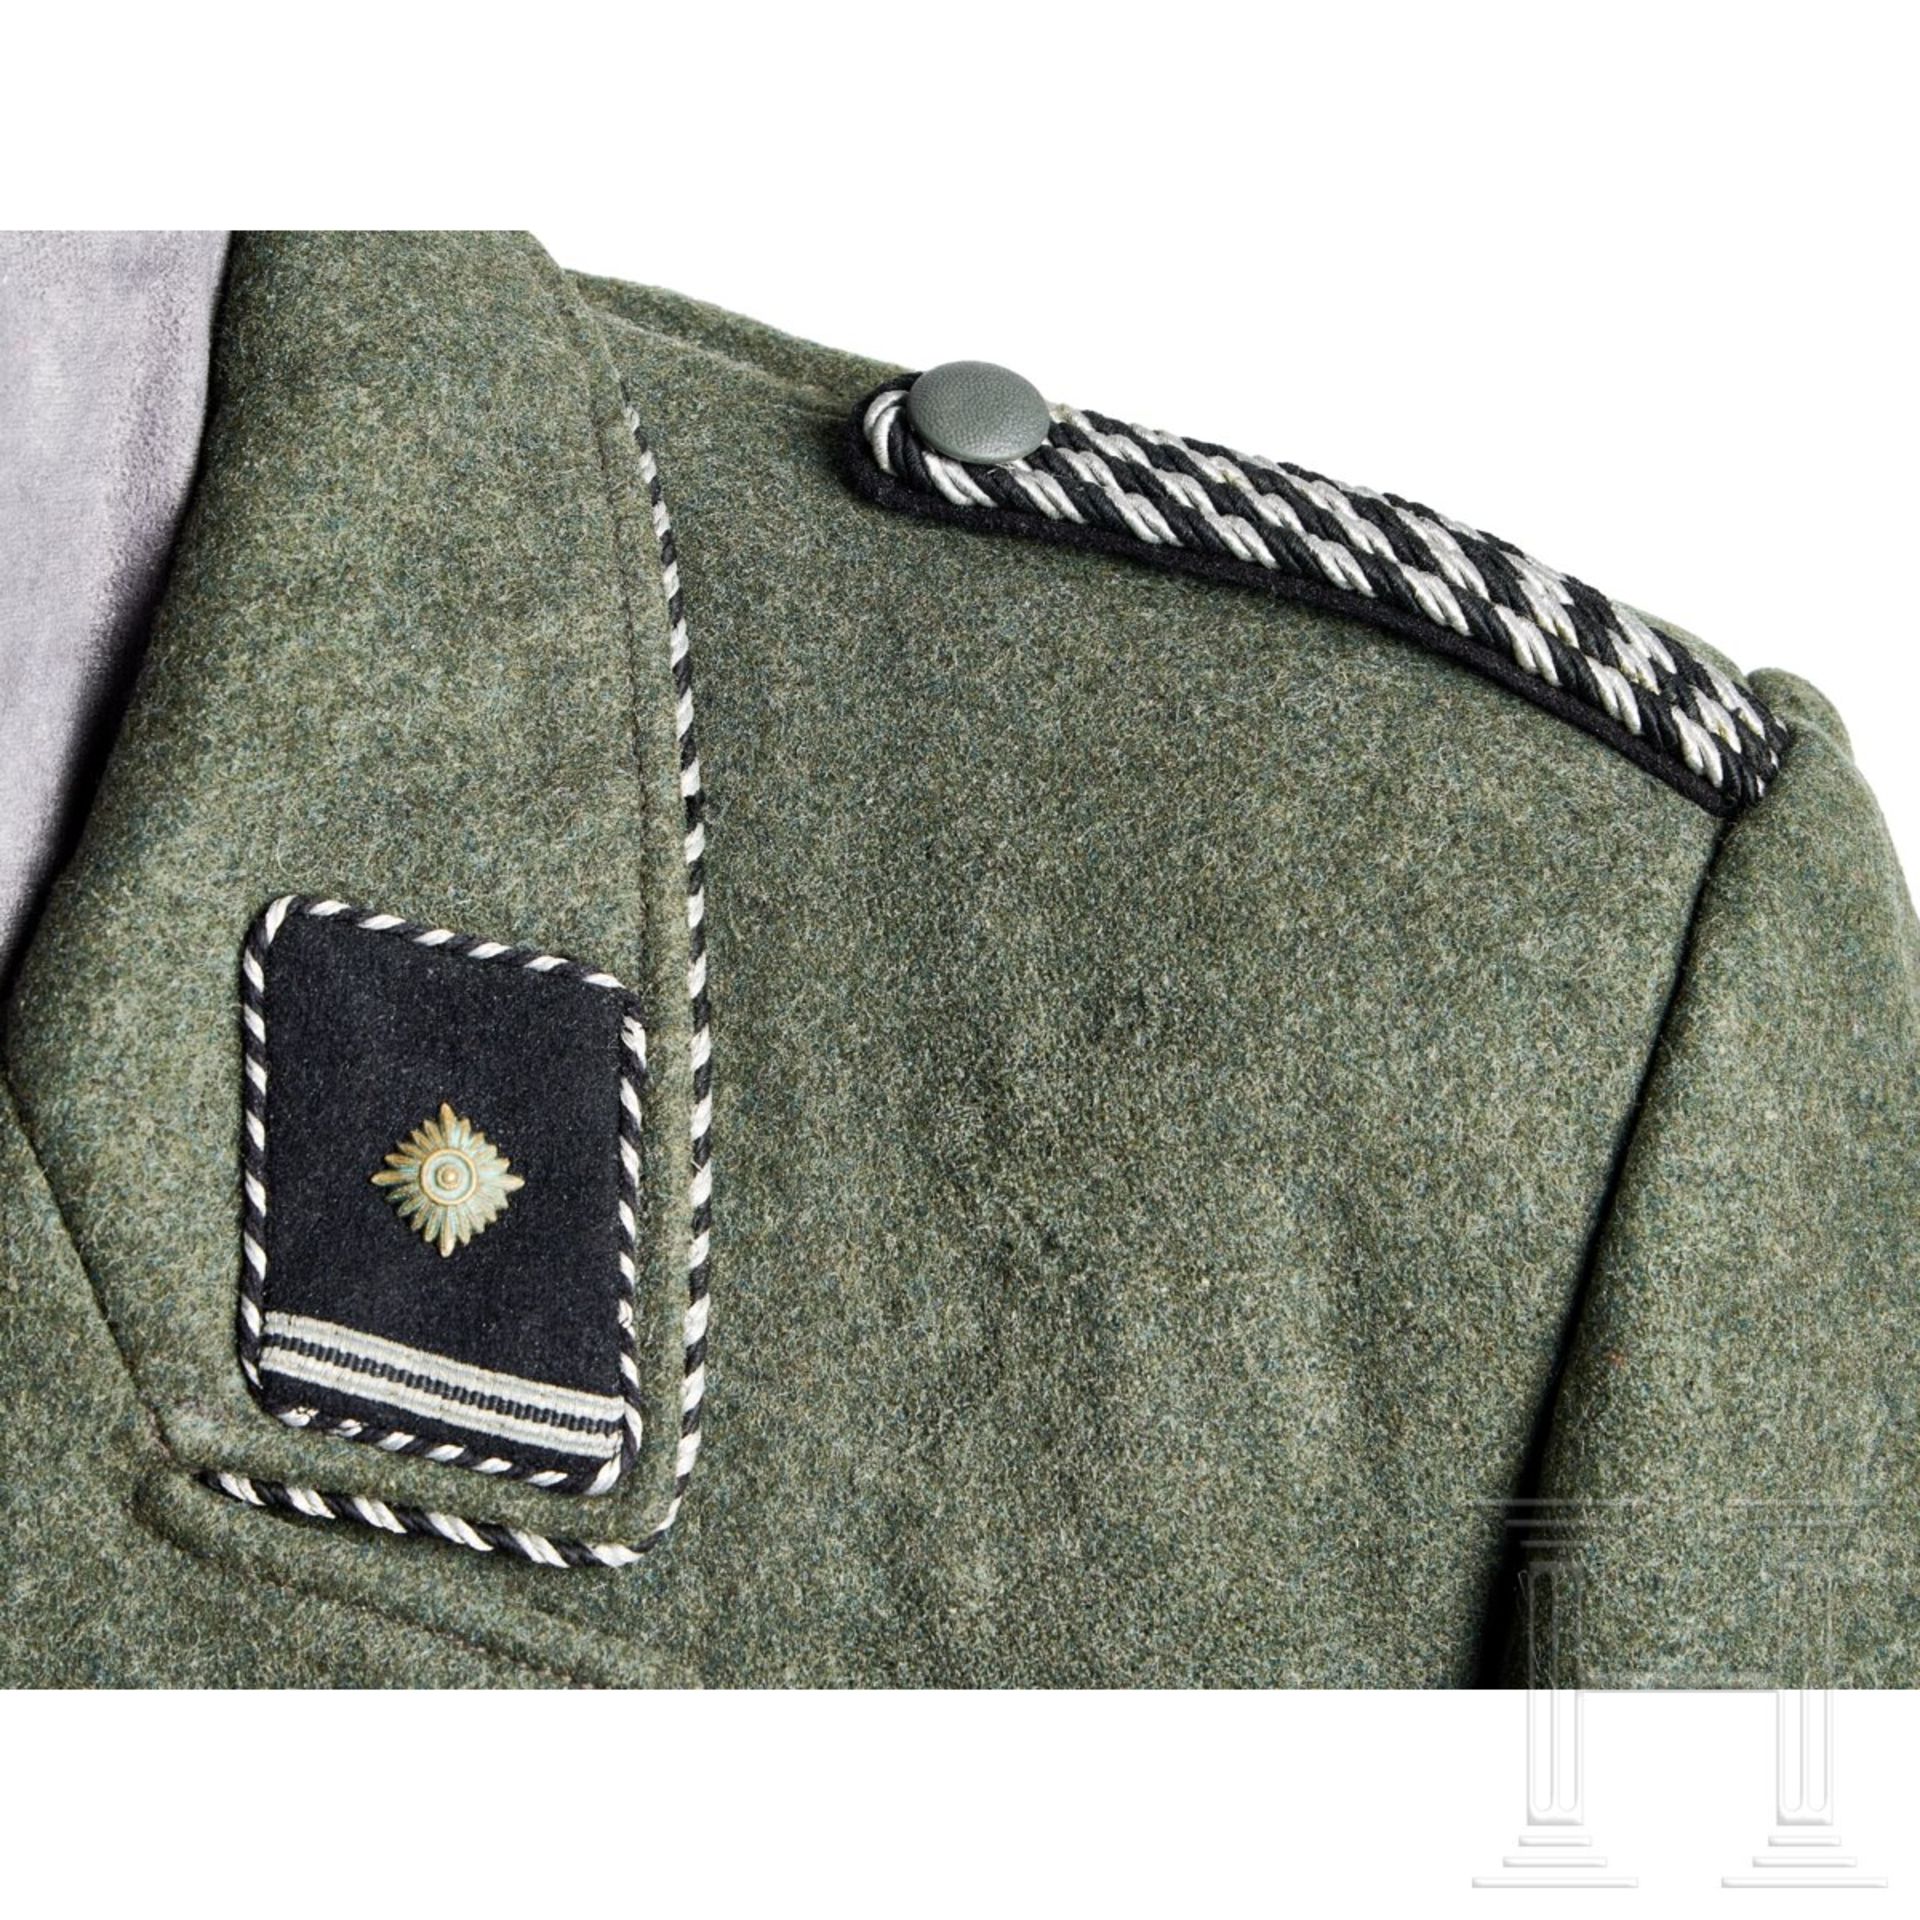 A 1939 Field Grey Service Tunic for a Scharführer of the SD - Bild 5 aus 14